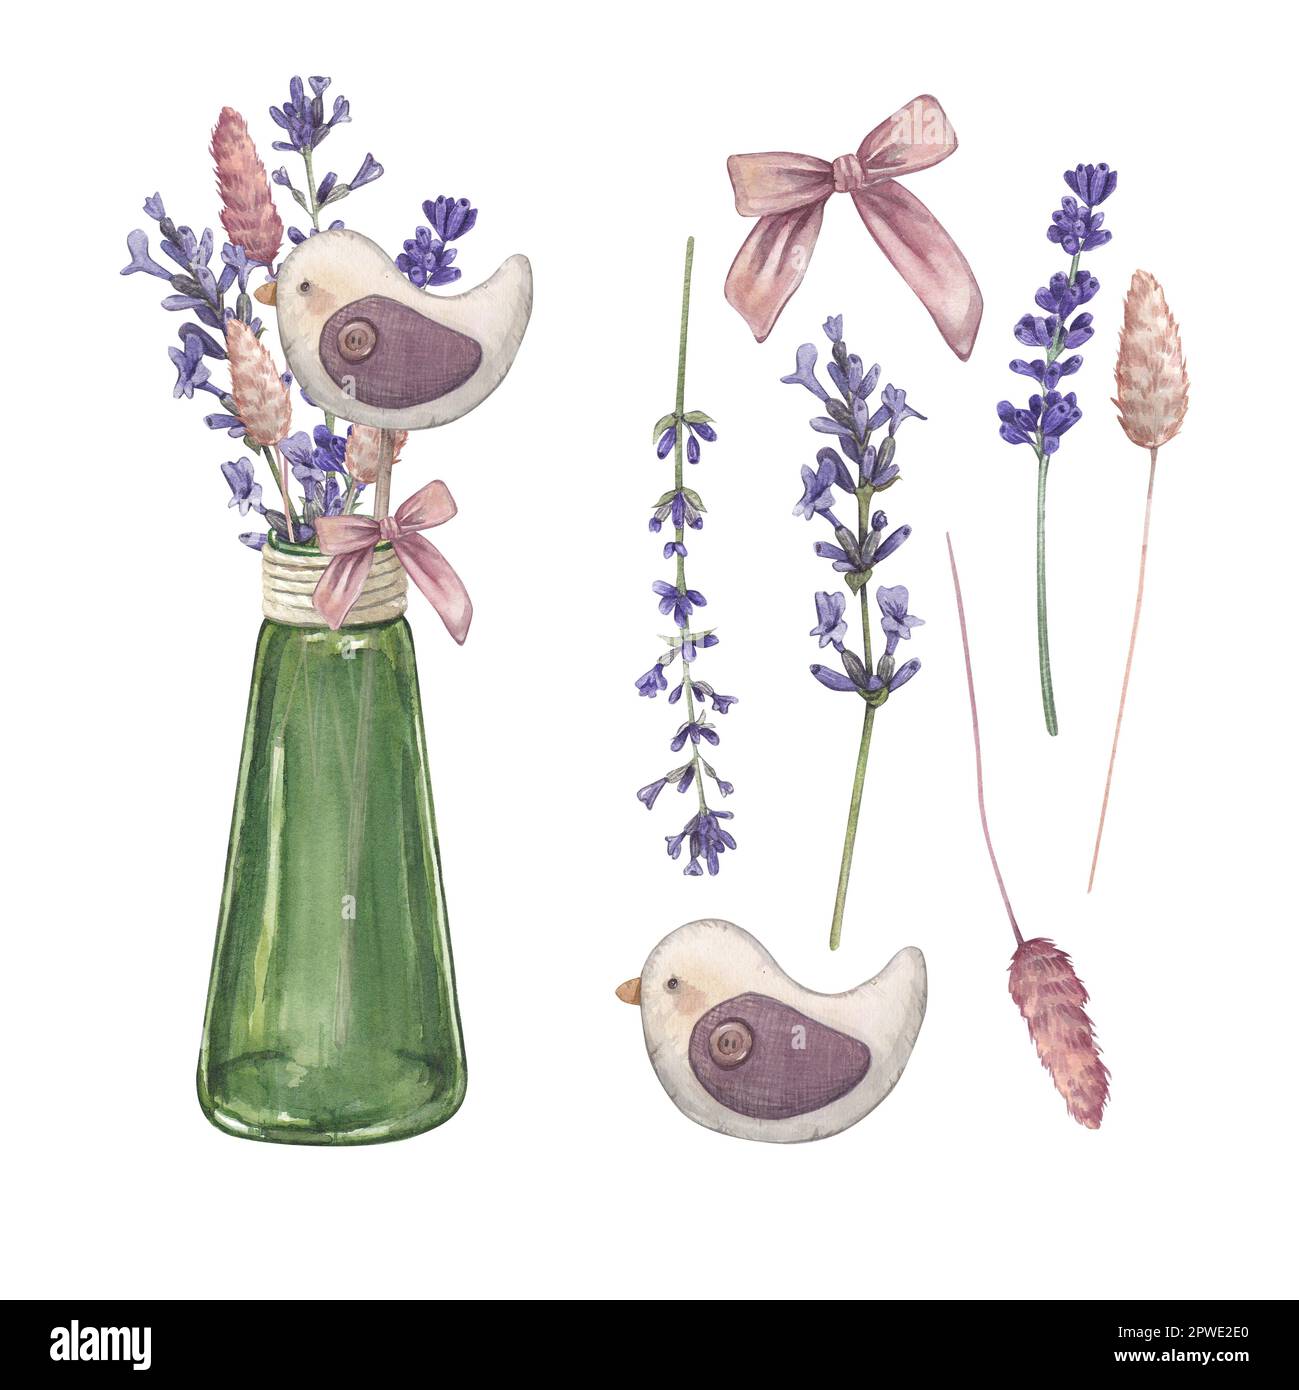 Mettre un bouquet de lavande dans un vase en verre isolé sur fond blanc Illustration aquarelle de fleurs provençales. Style français. Image botanique de Banque D'Images